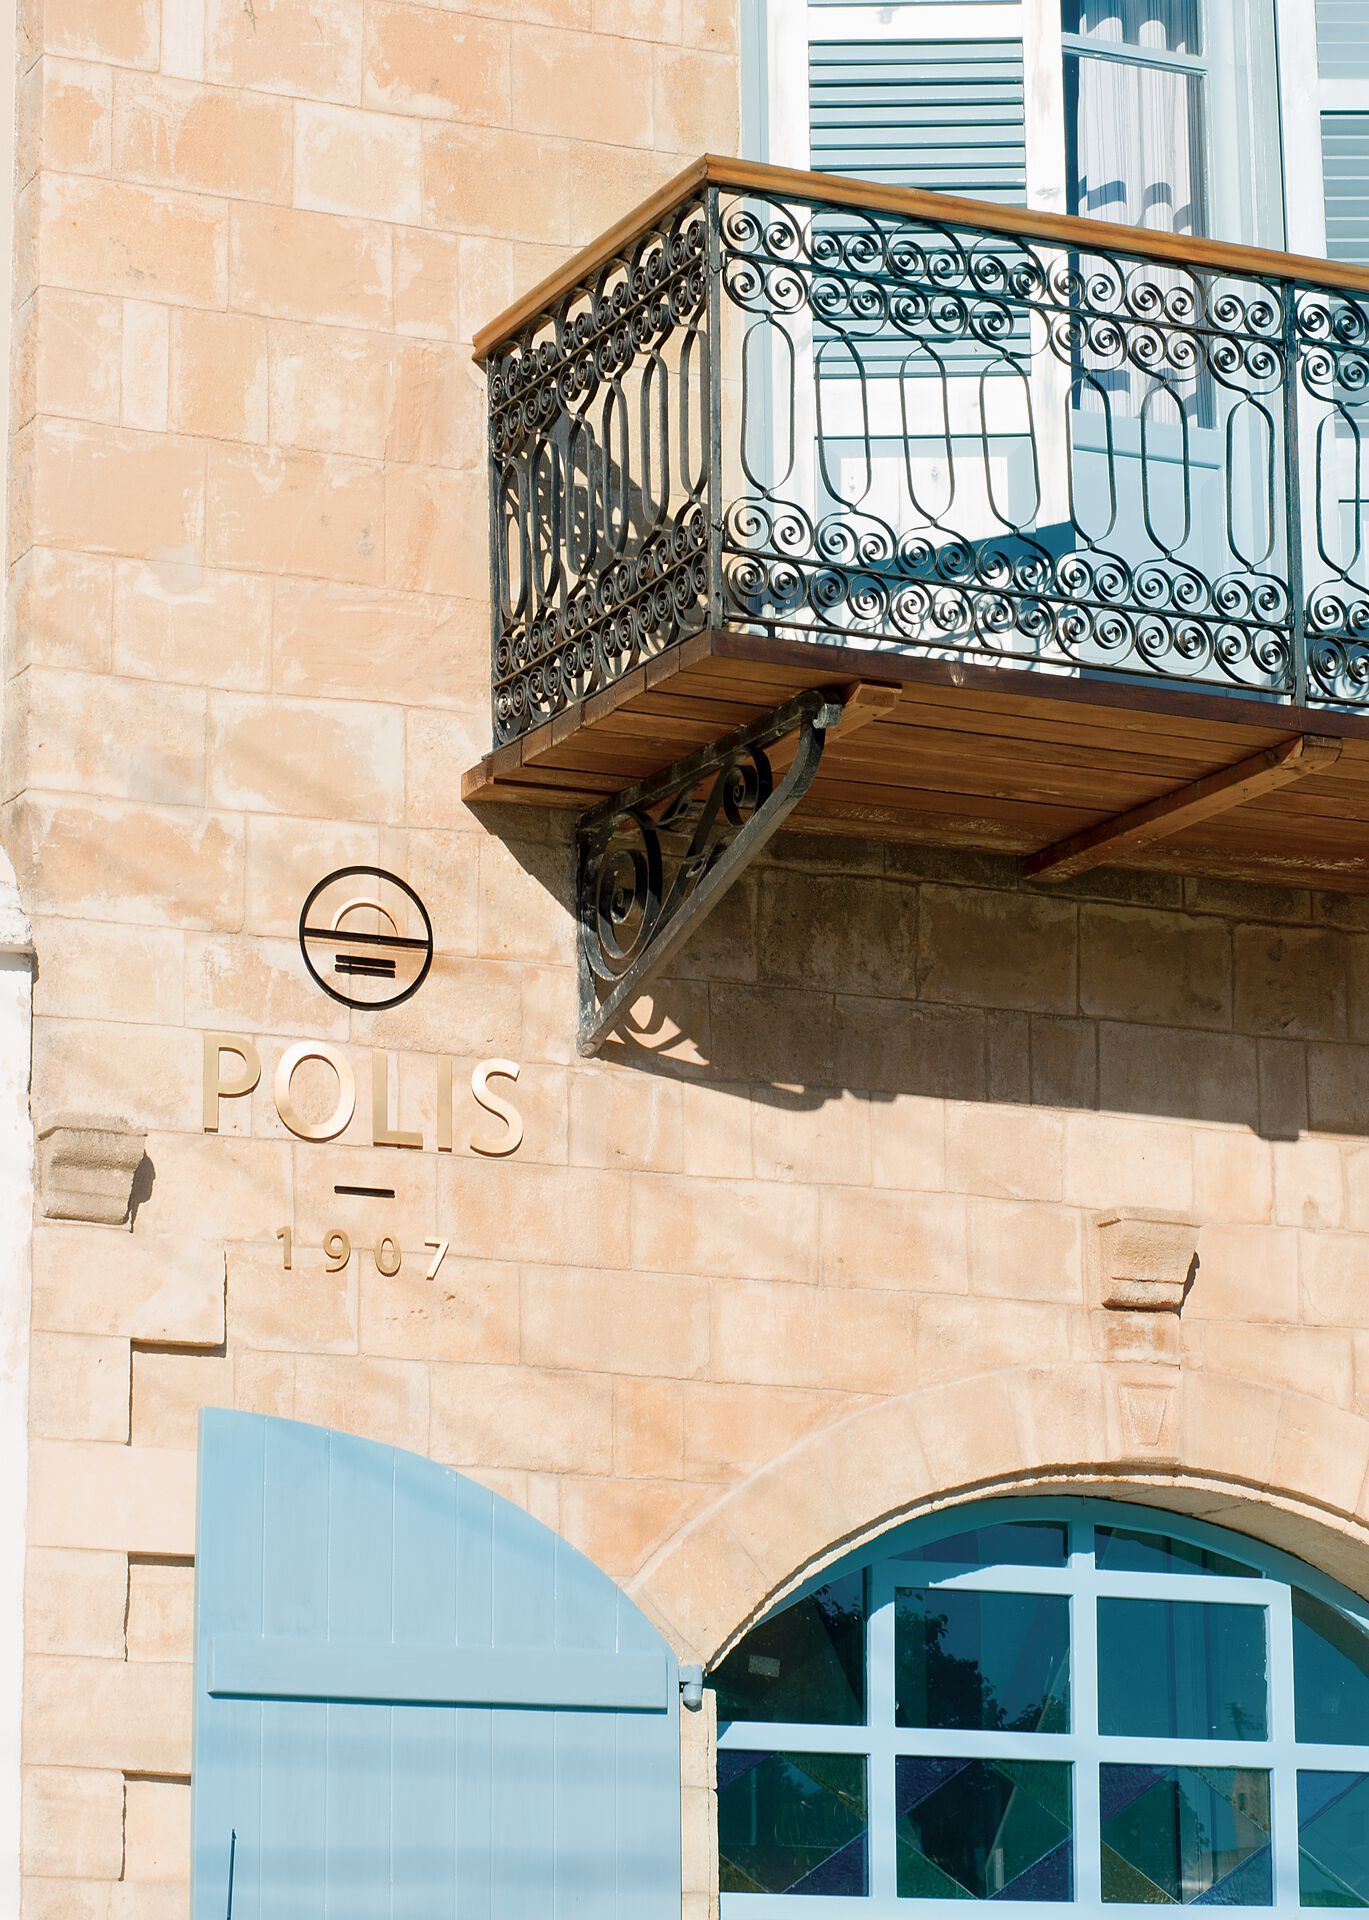 Chypre - Hôtel Polis 1907 4*